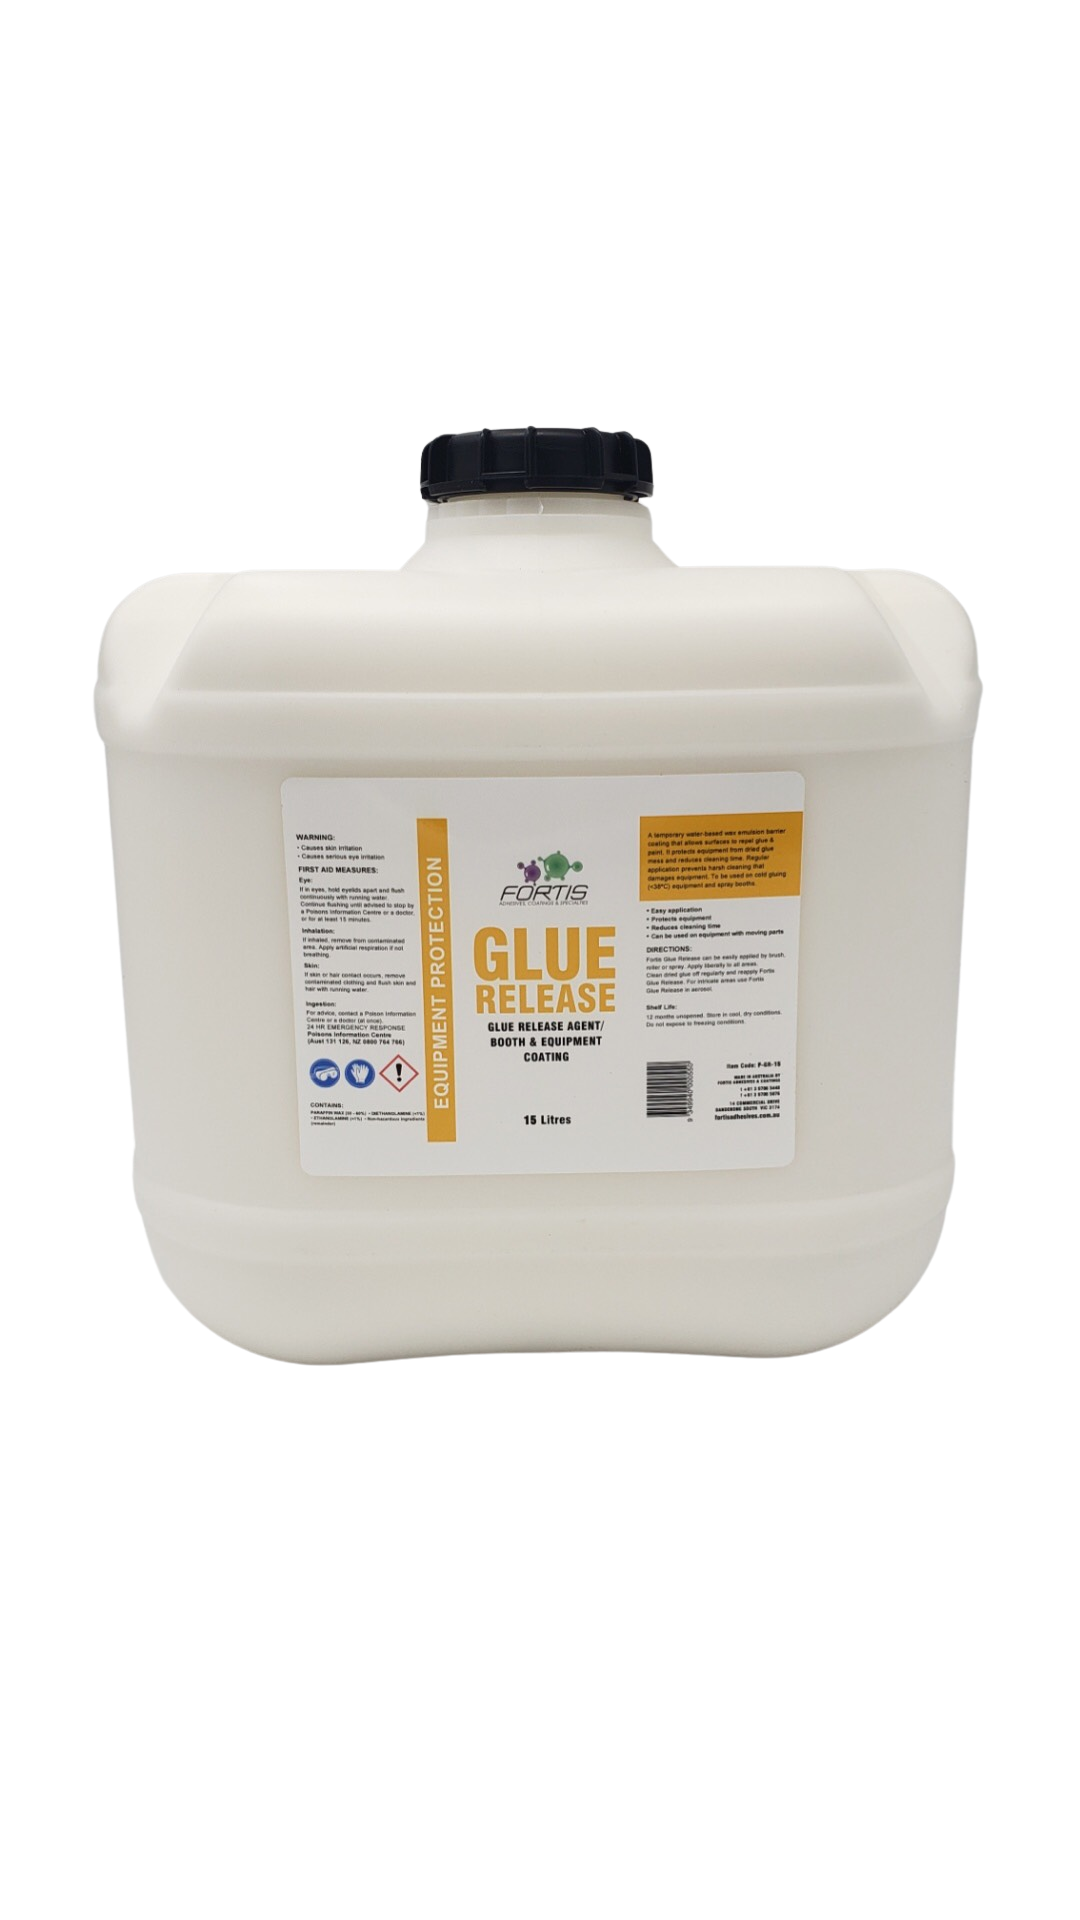 Glue Release